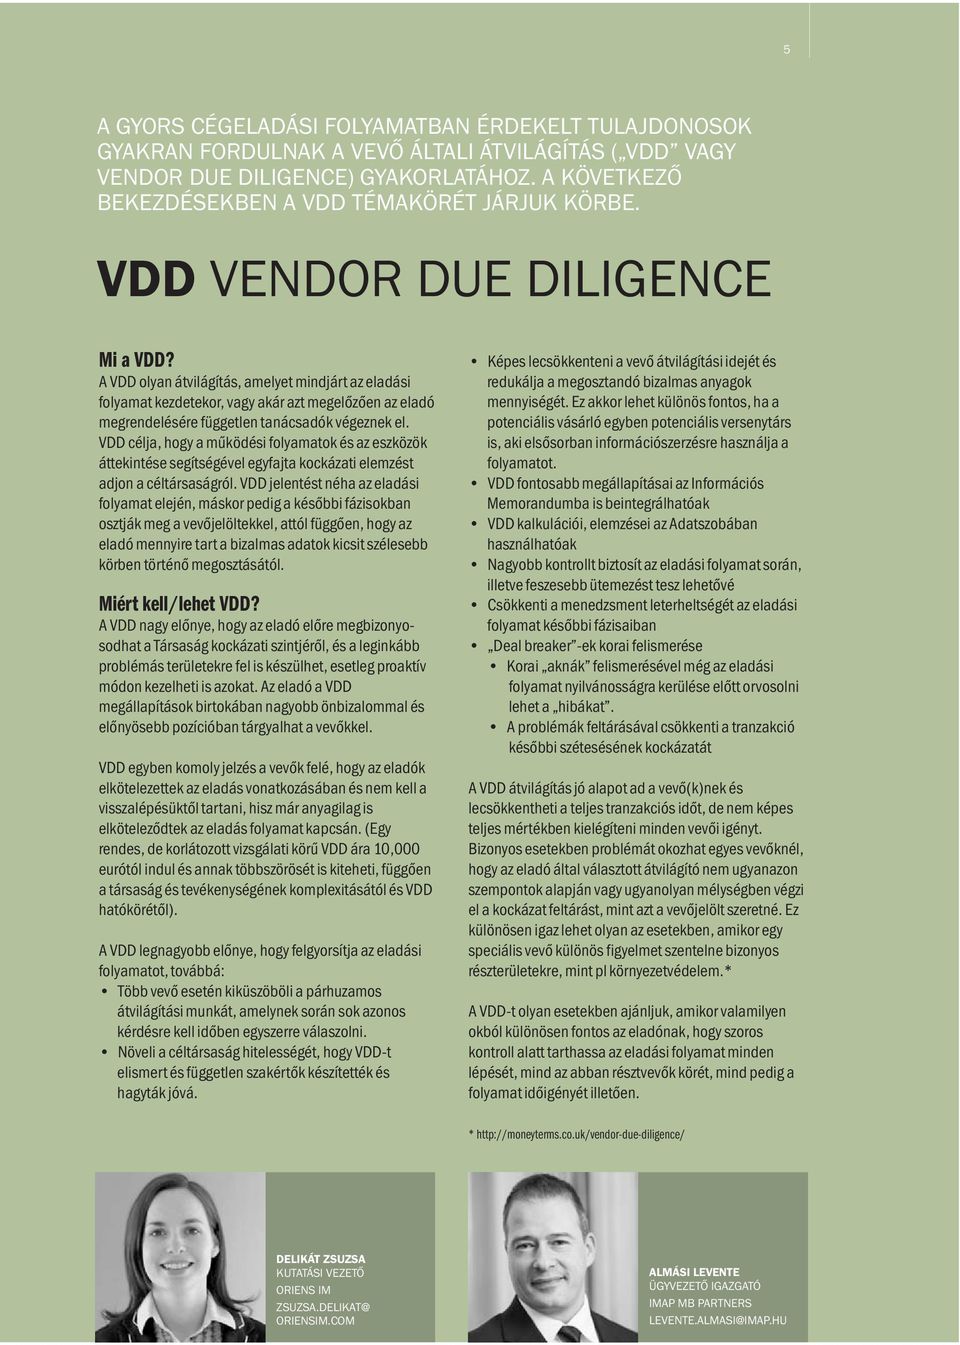 A VDD olyan átvilágítás, amelyet mindjárt az eladási folyamat kezdetekor, vagy akár azt megelőzően az eladó megrendelésére független tanácsadók végeznek el.